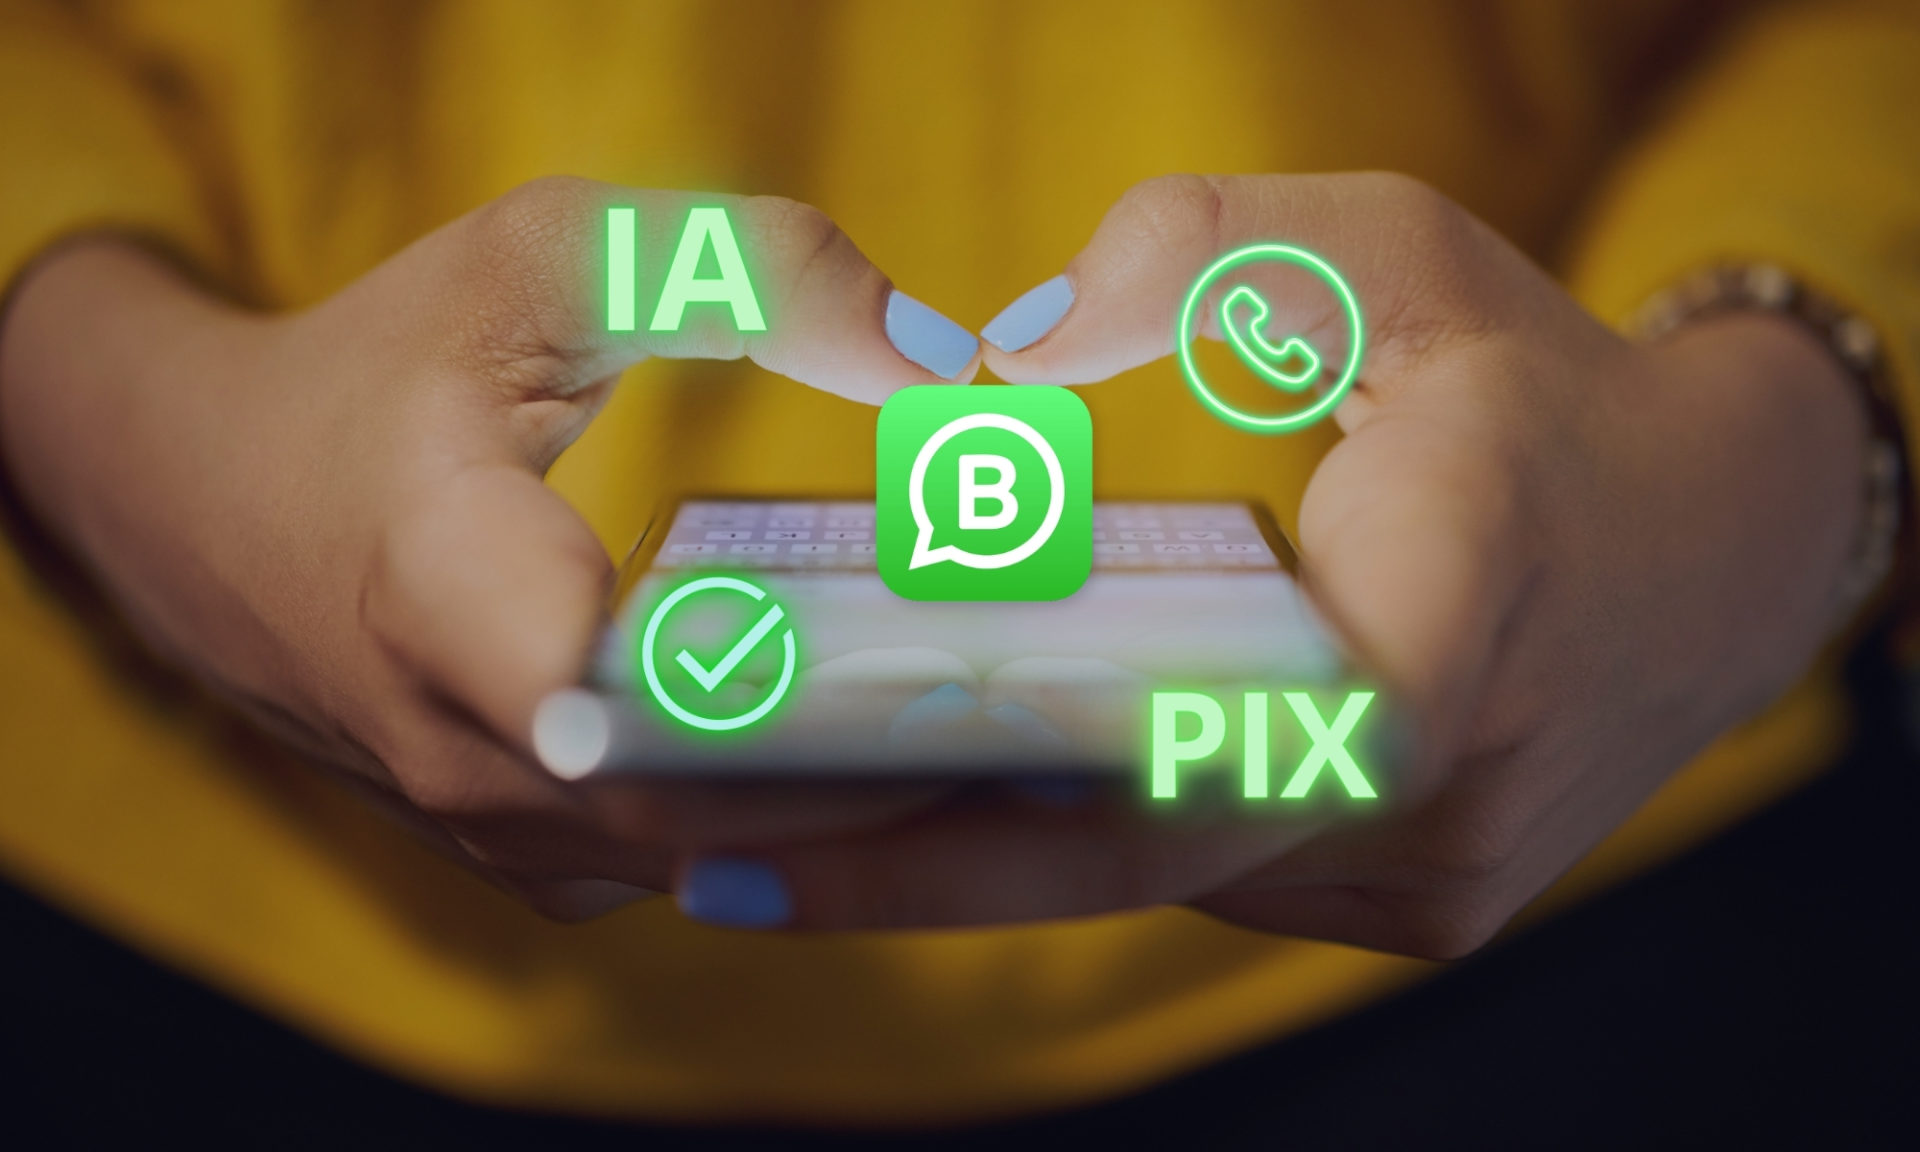 Novidades no WhatsApp para Negócios: Pix, IA e Verificação